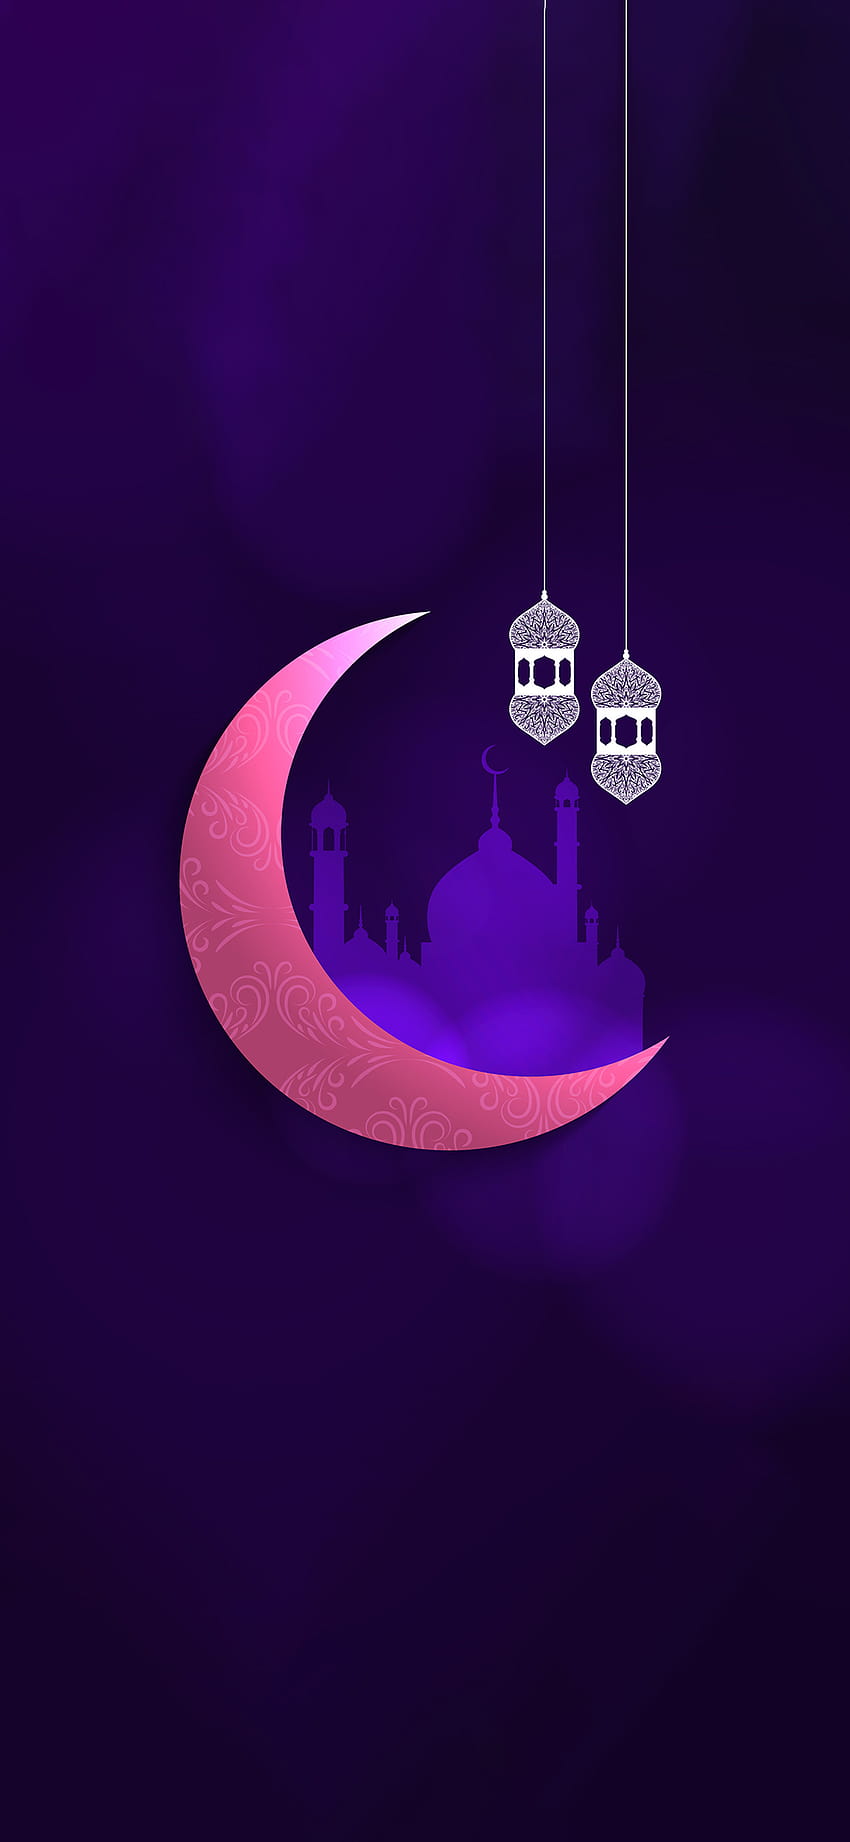 Beautiful Eid Mubarak Festival Greeting Vector Backgrounds Islamic ...